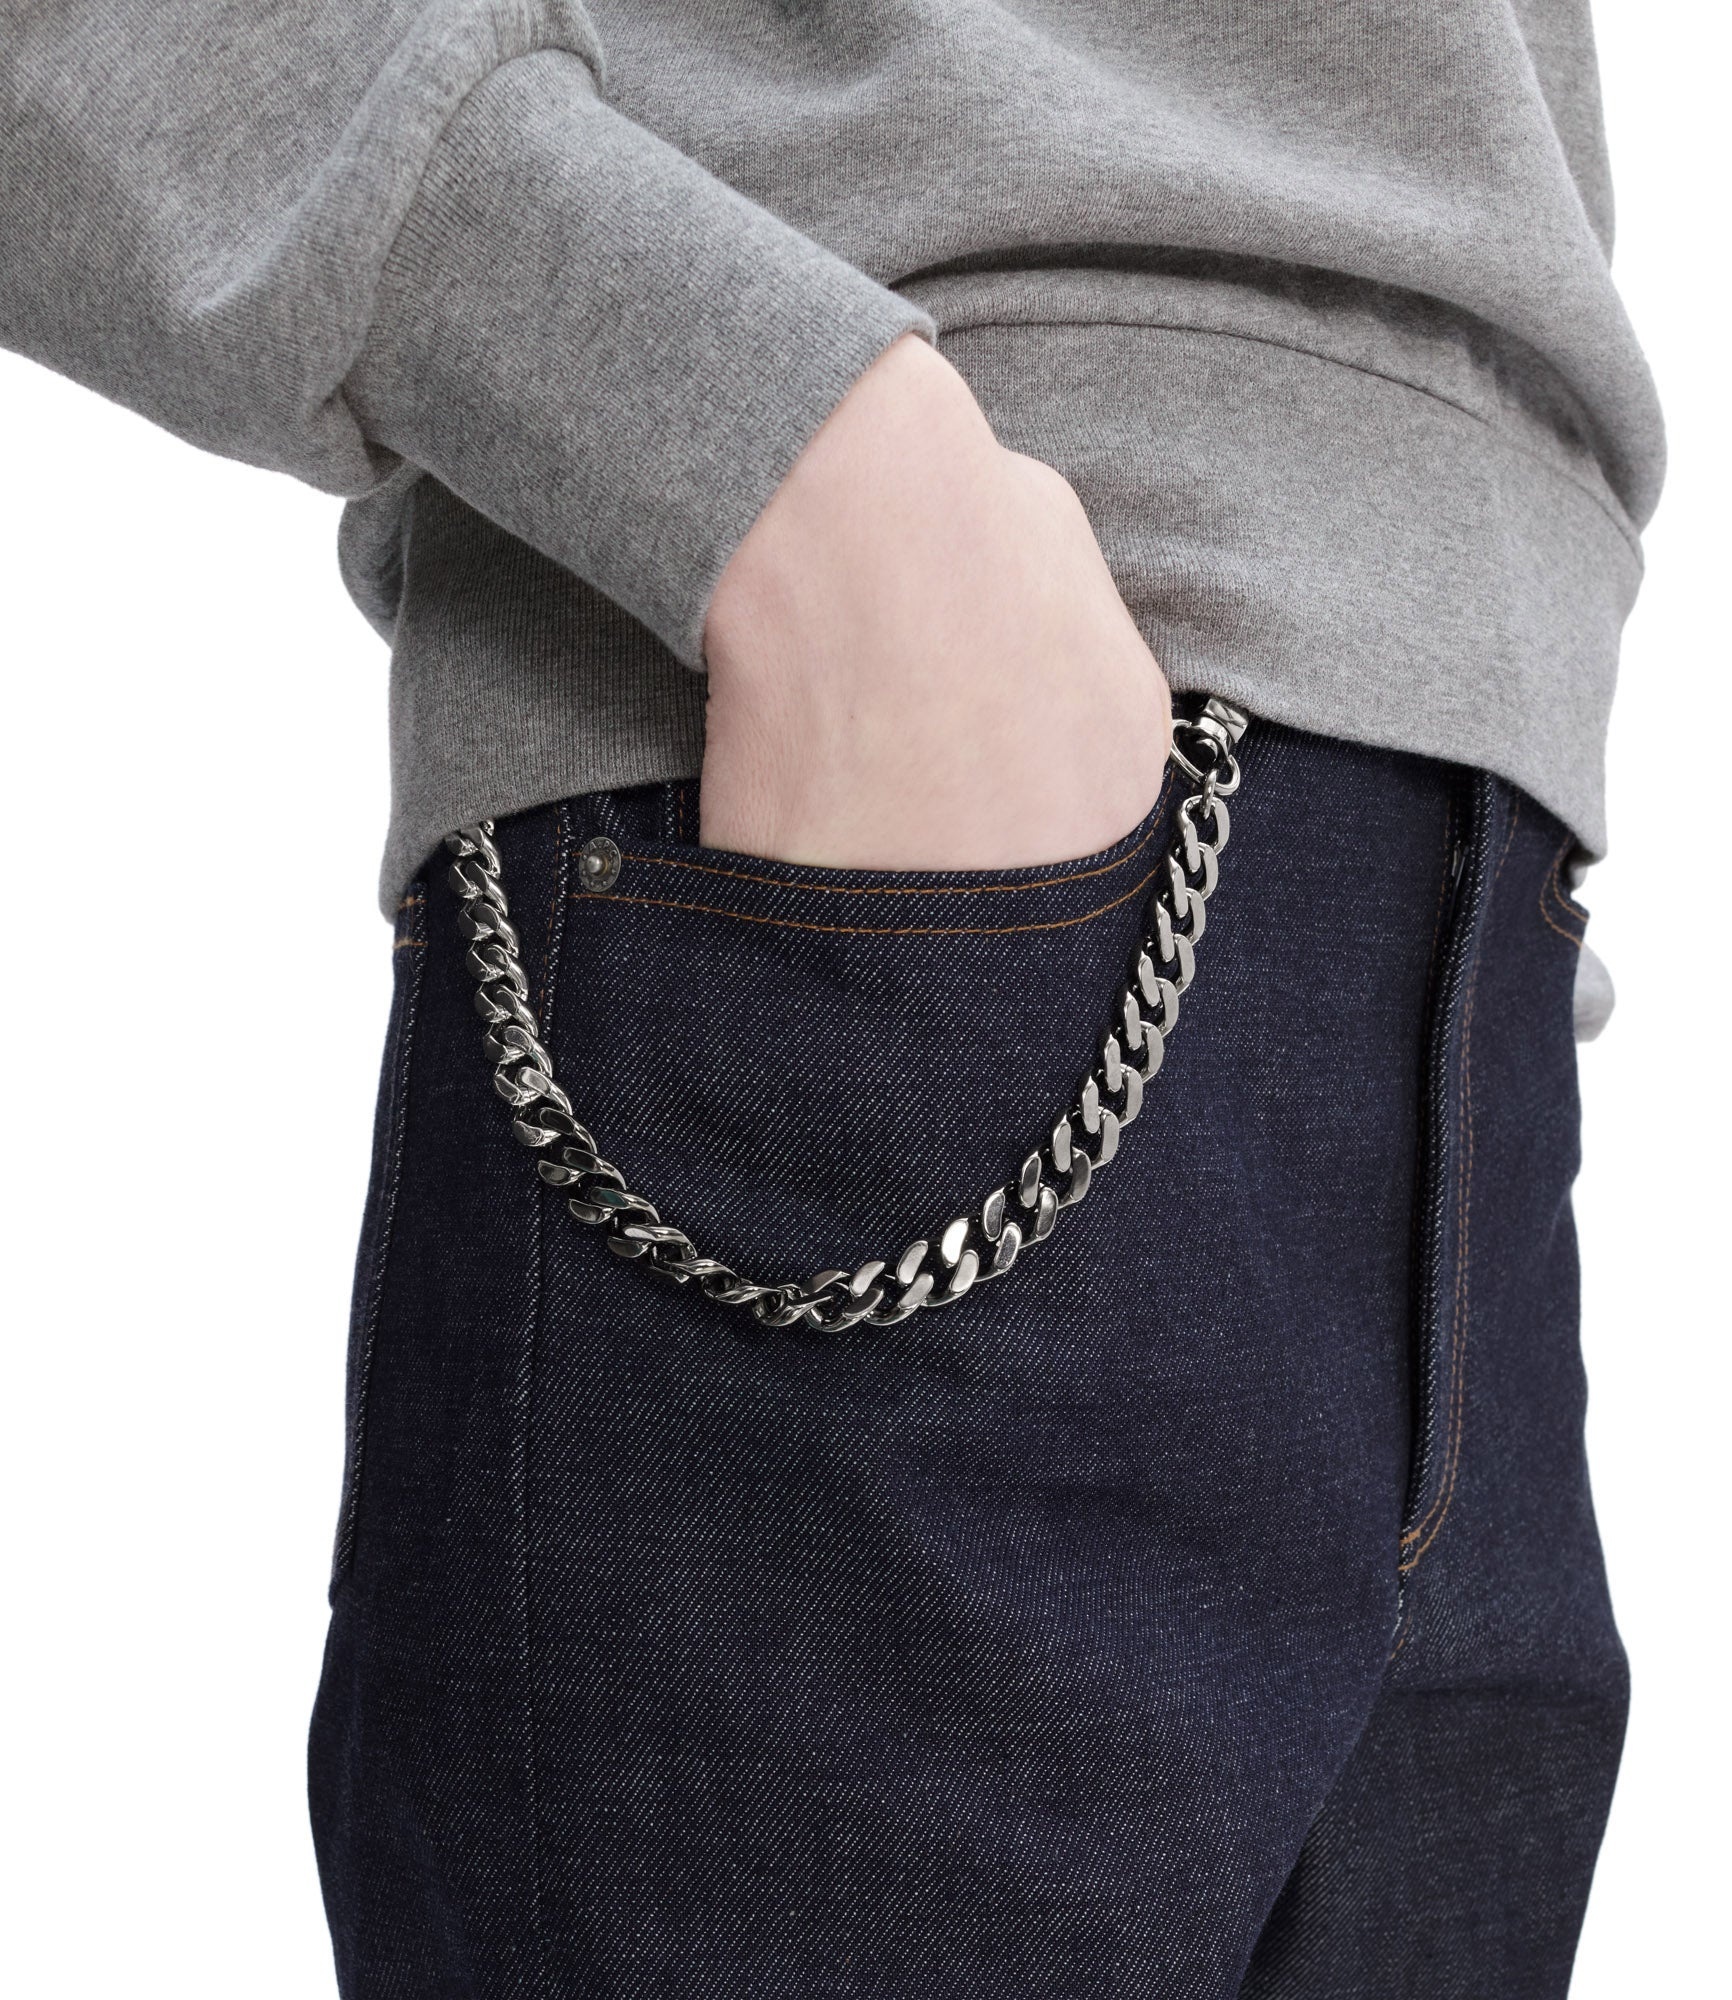 I.S. wallet belt chain - 2